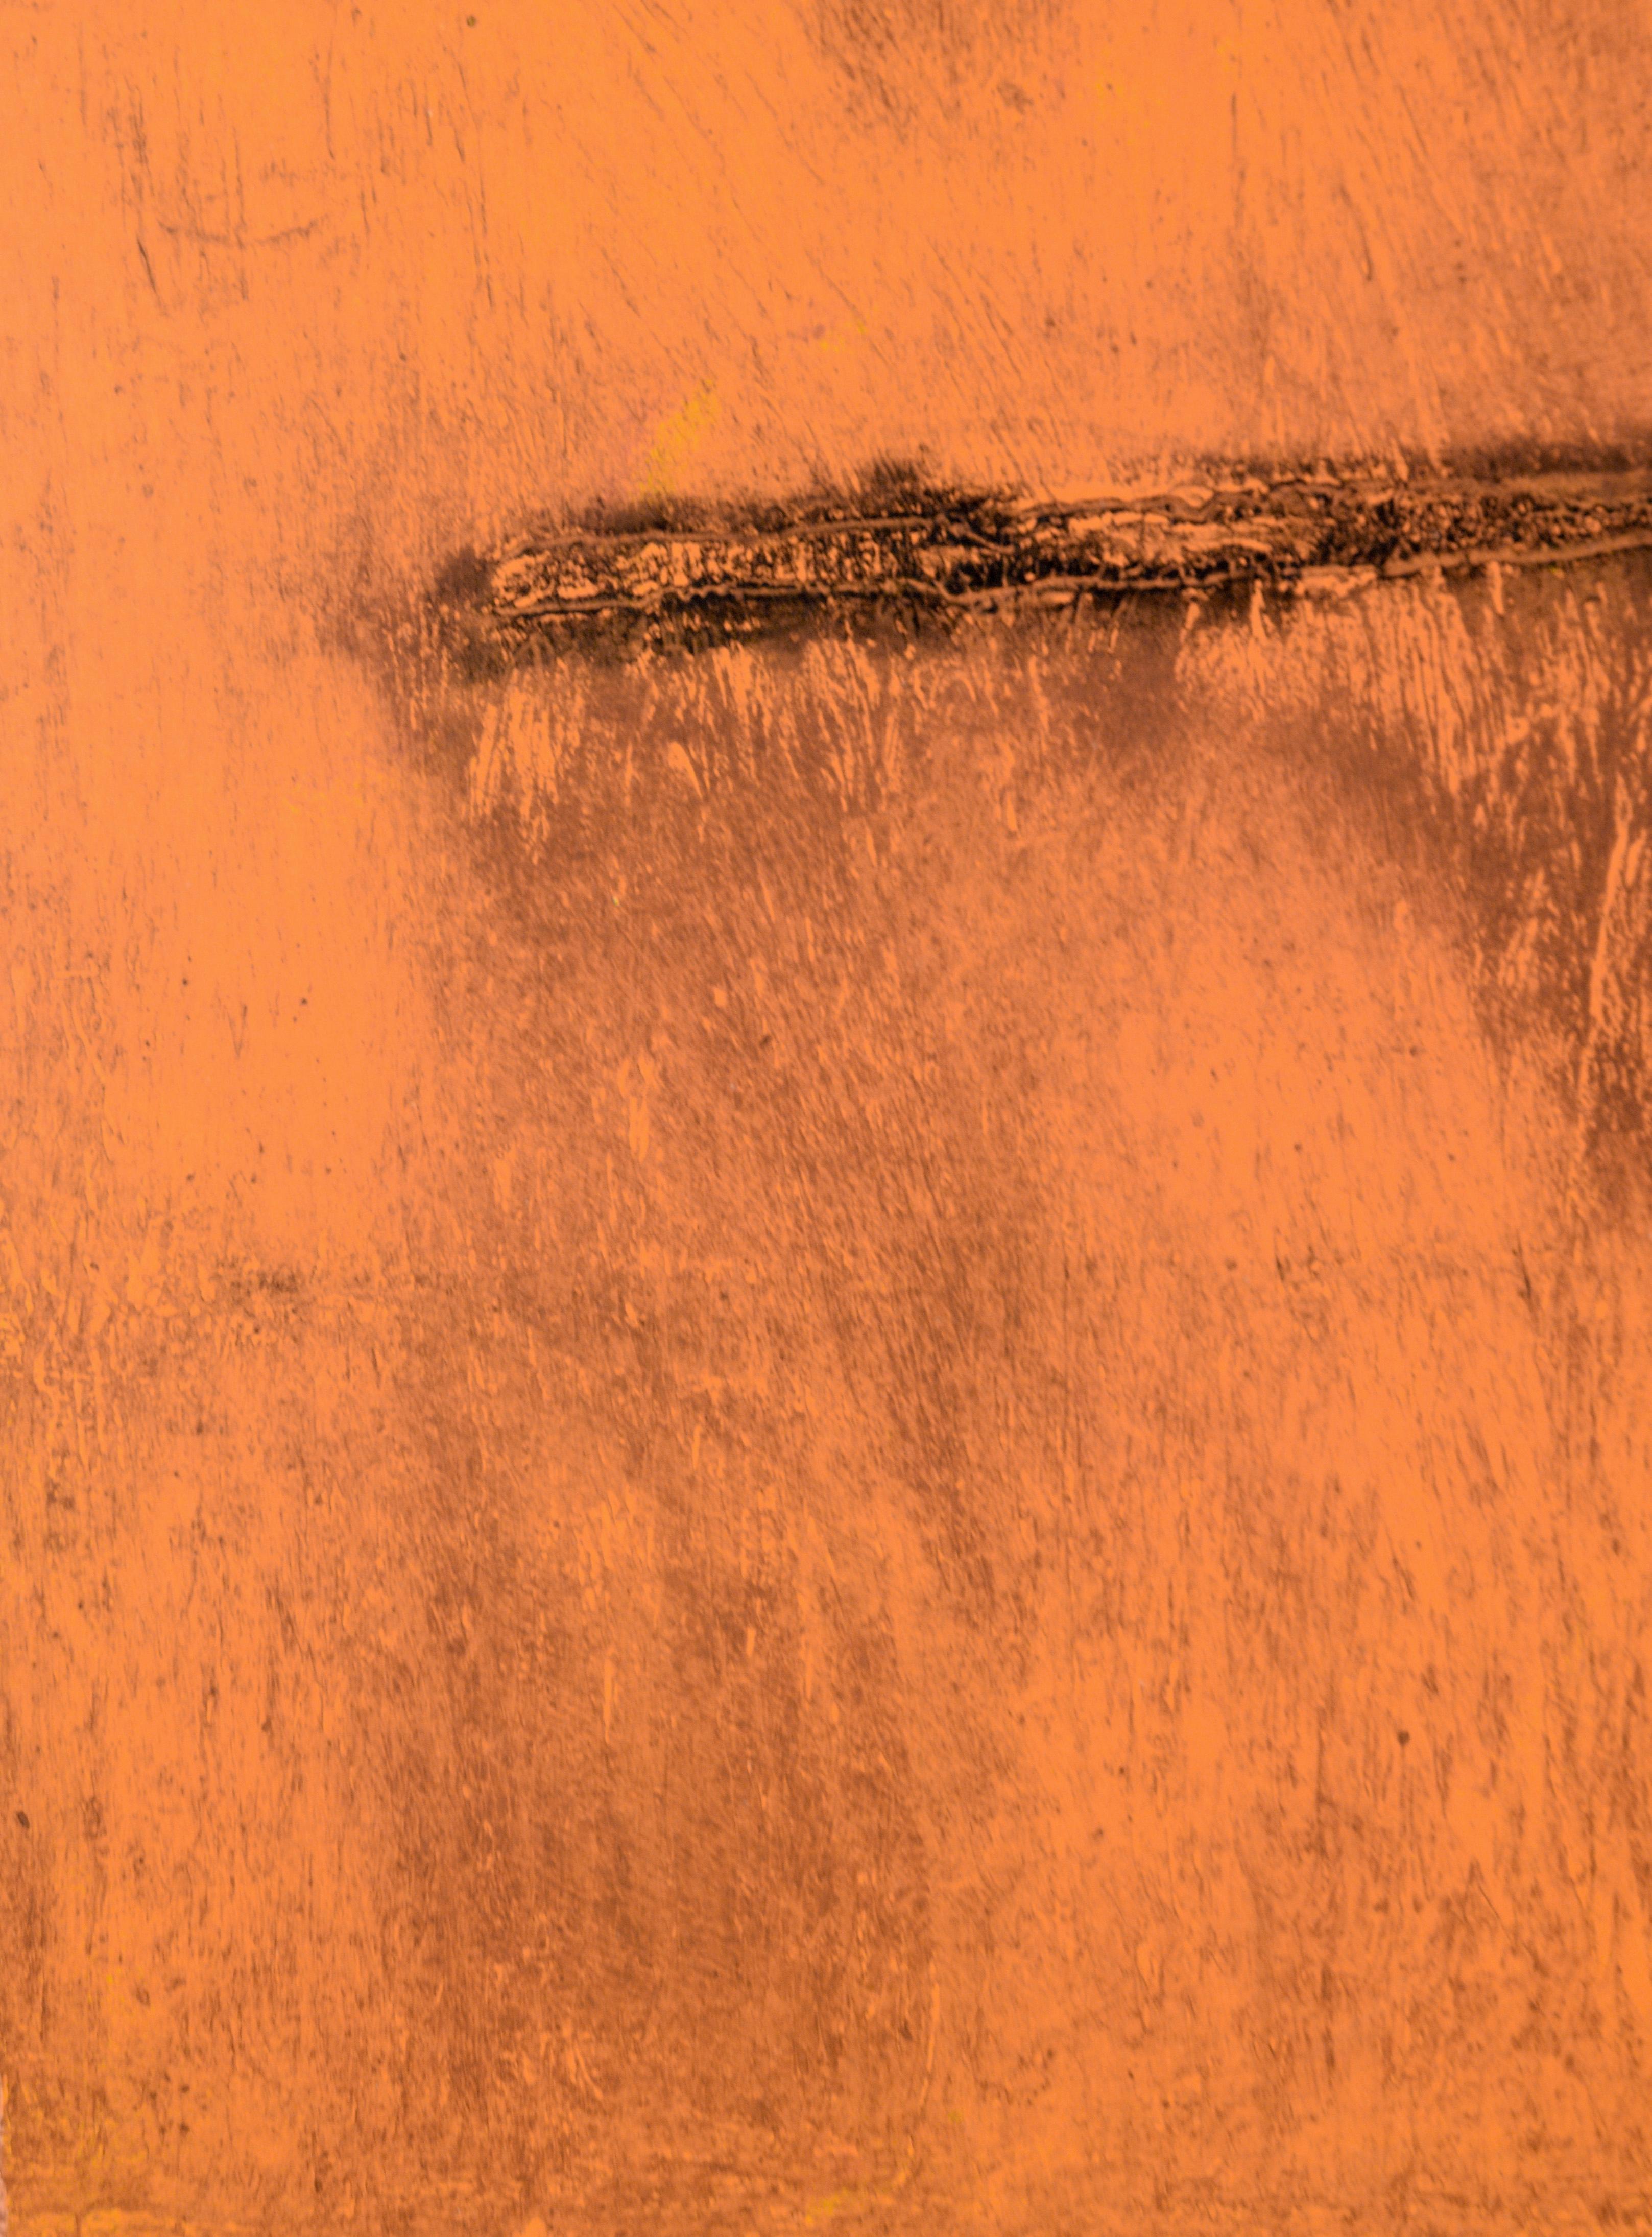 Deadpan orange - Monogravure EV sur papier

Monotype original par transfert de l'artiste californienne Heather Speck (A.I.C.), fortement texturé dans des tons d'orange brûlé.

Initialisé dans le coin inférieur droit, 